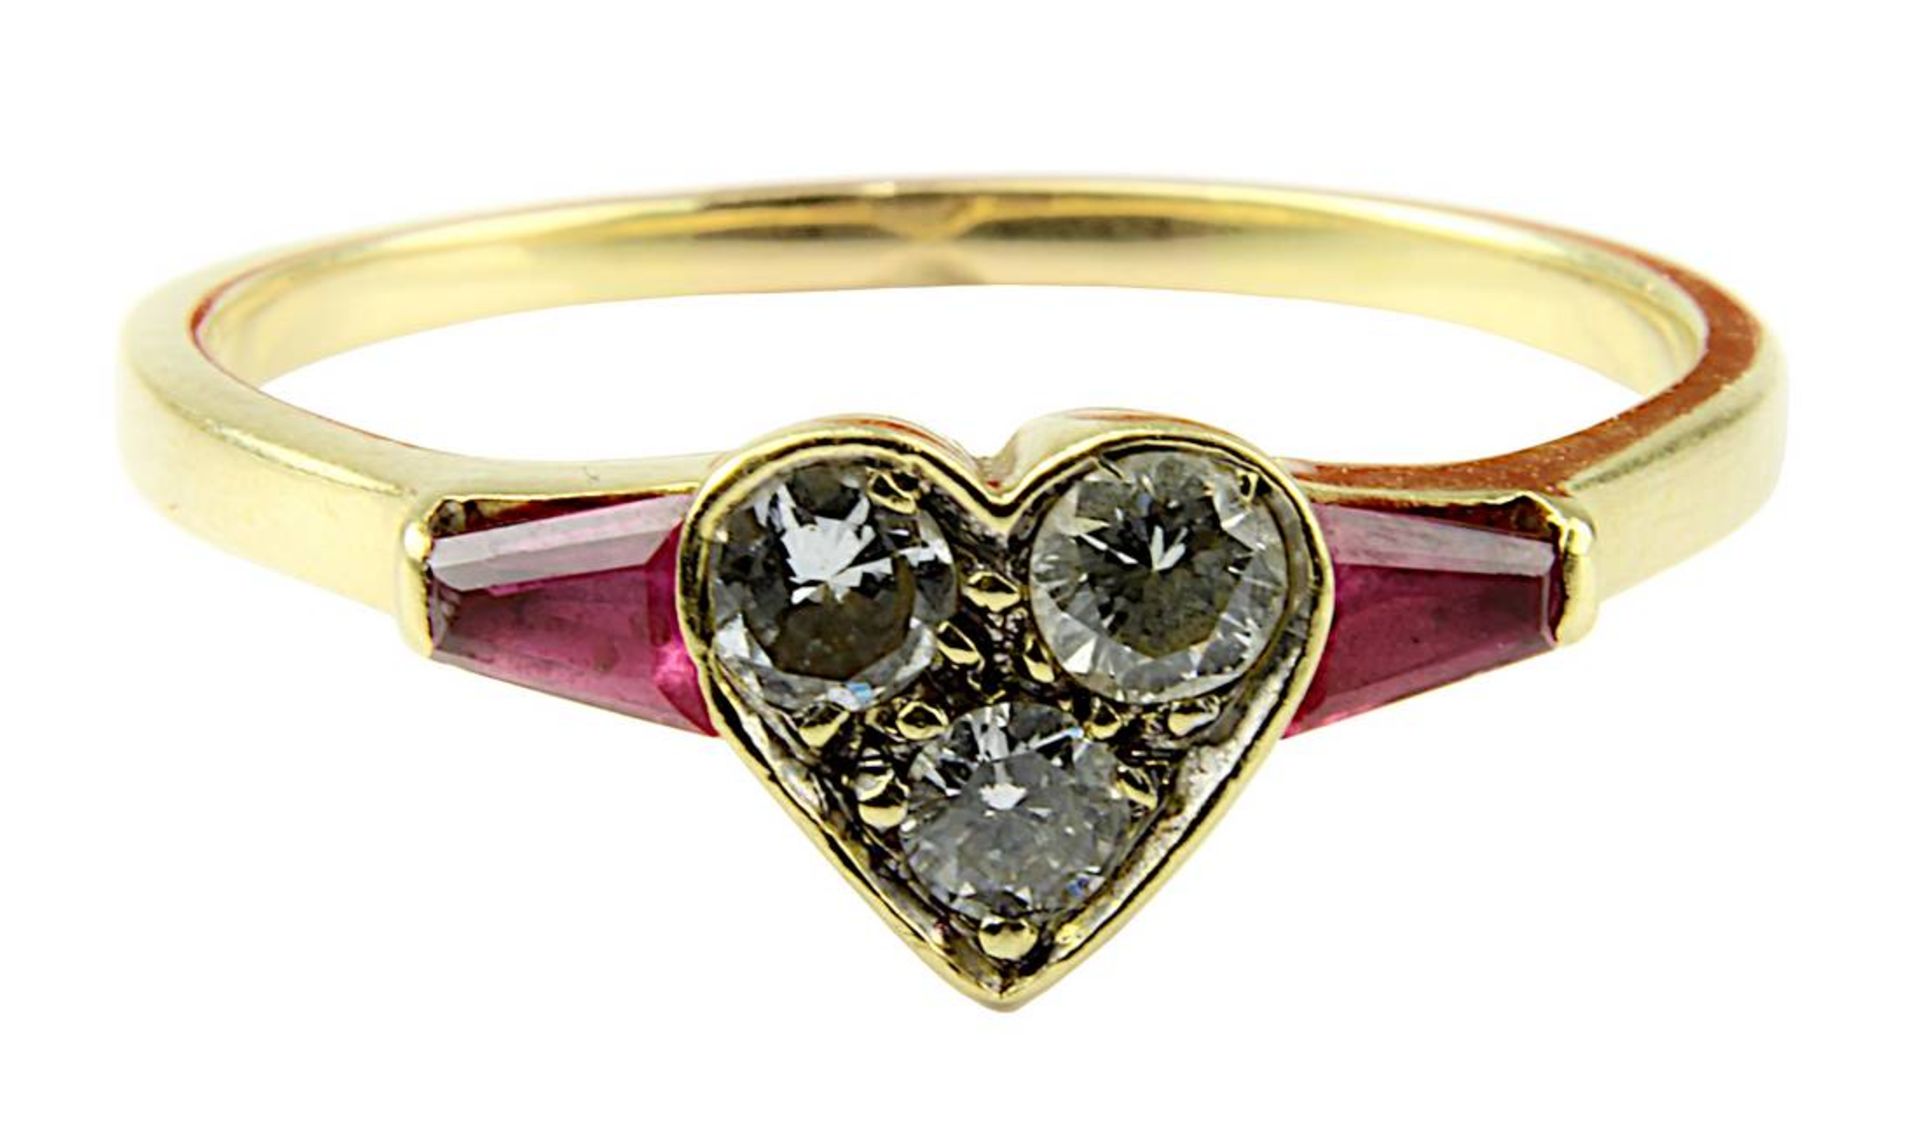 Herzförmiger Gelbgold-Ring mit Brillanten und Rubinen, gepunzt 750, herzförmiger Ringkopf mit 3